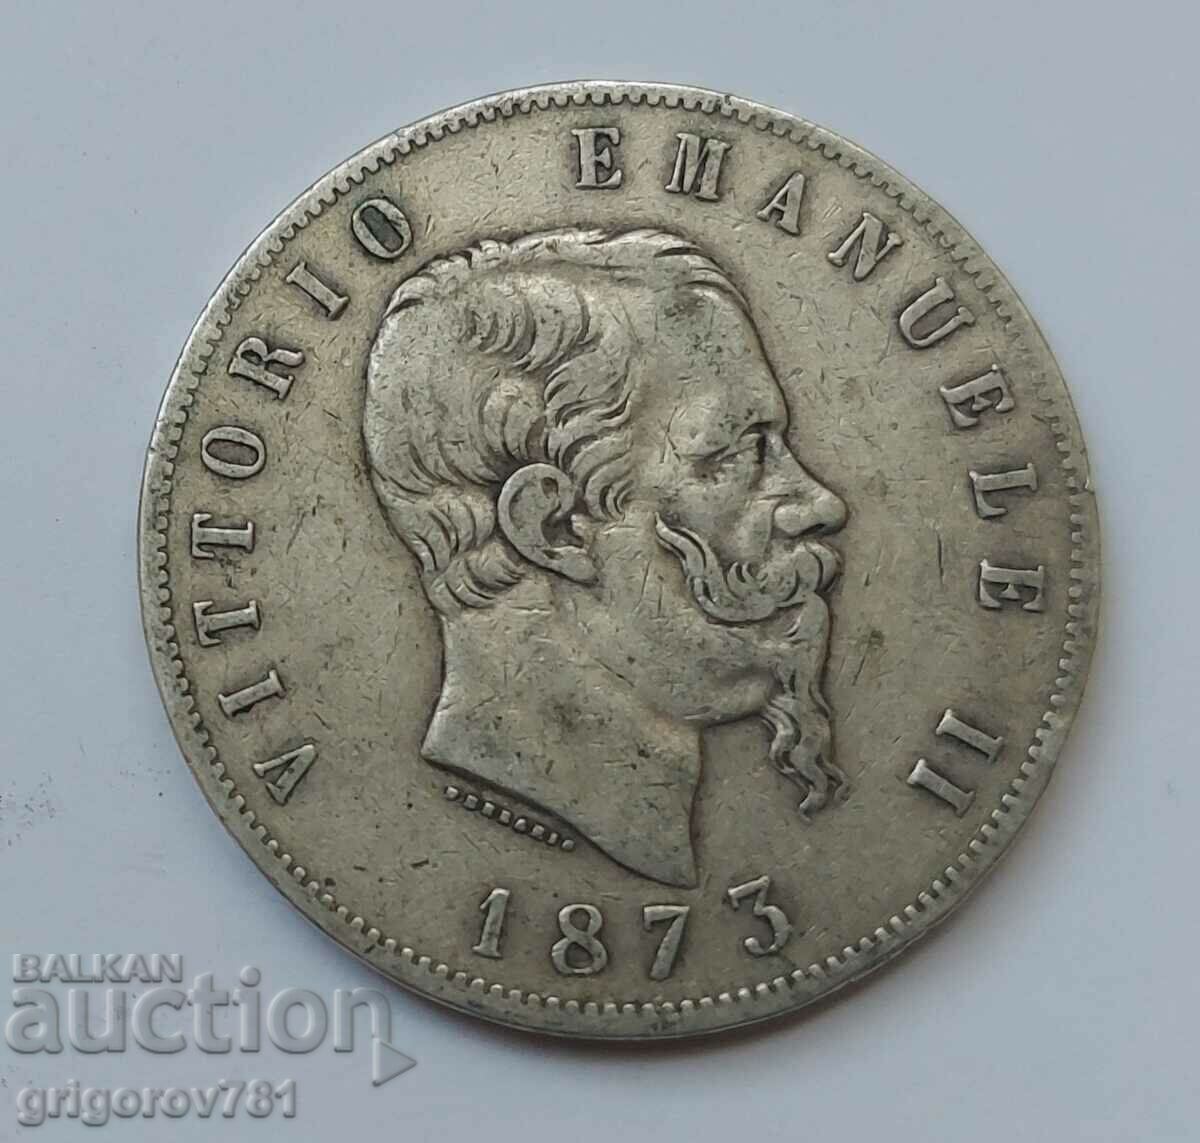 Ασημένιο 5 λίρες Ιταλία 1873 - Ασημένιο νόμισμα #238